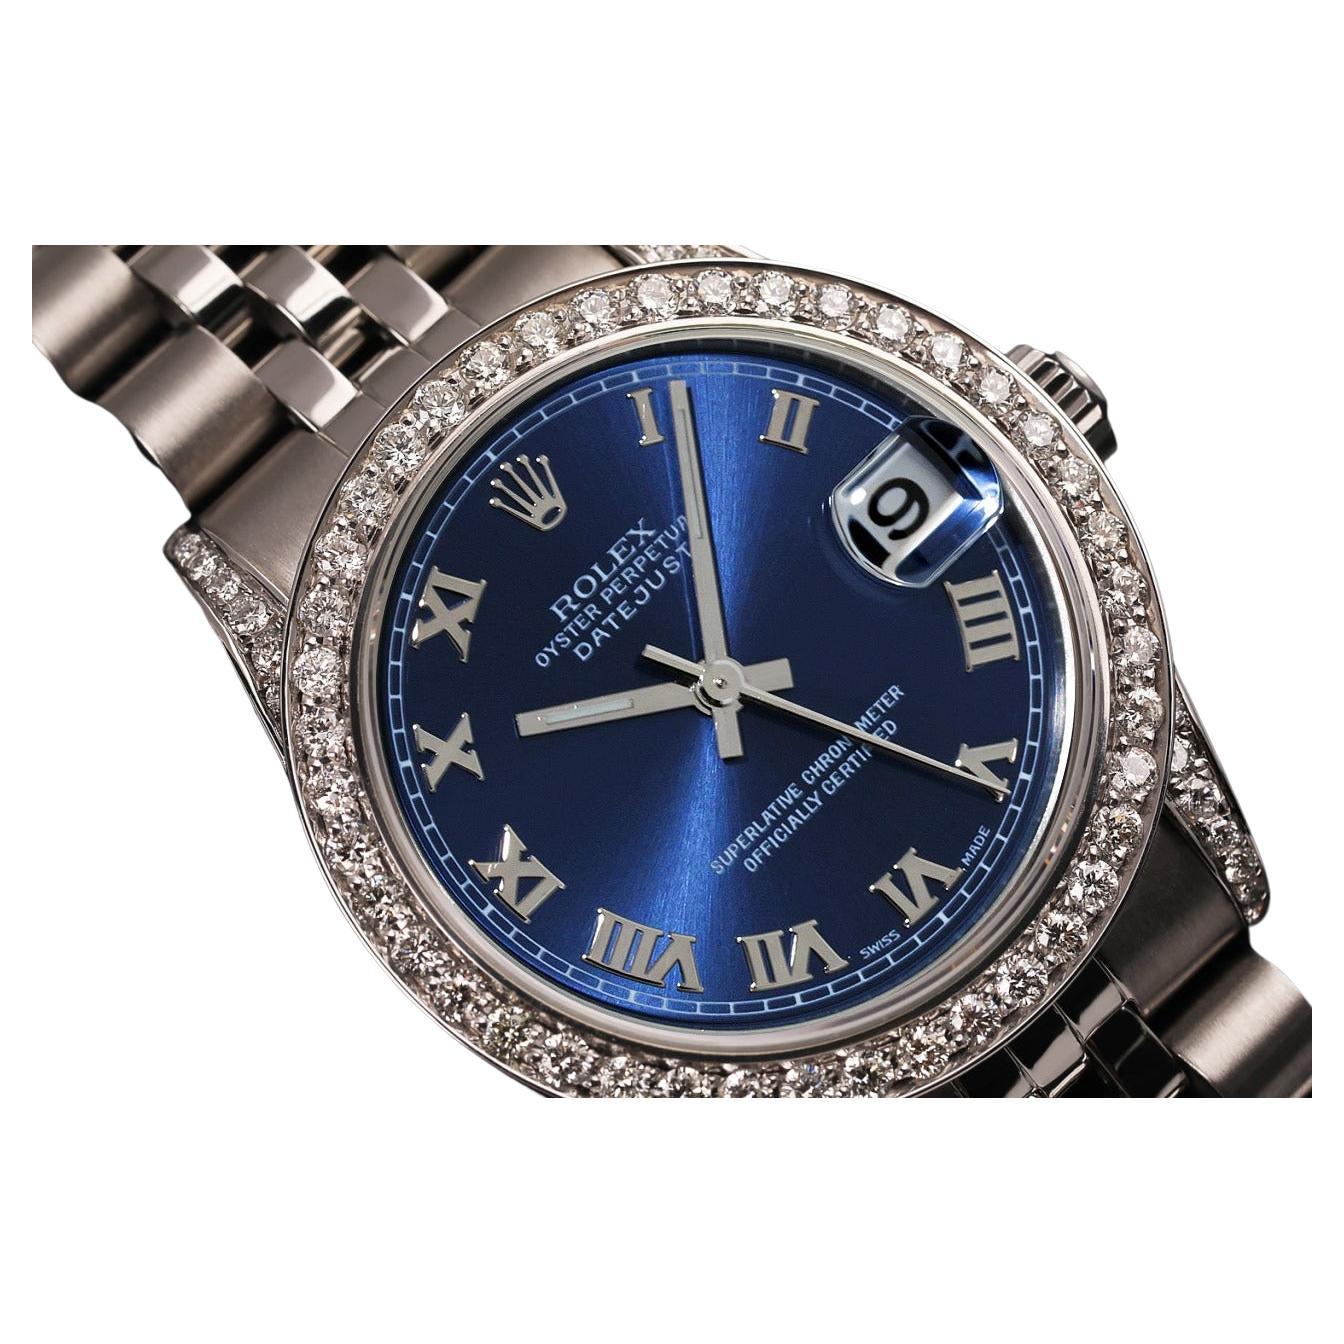 Rolex Montre Datejust SS avec lunette en diamant et cadran à chiffres romains bleus, sur mesure